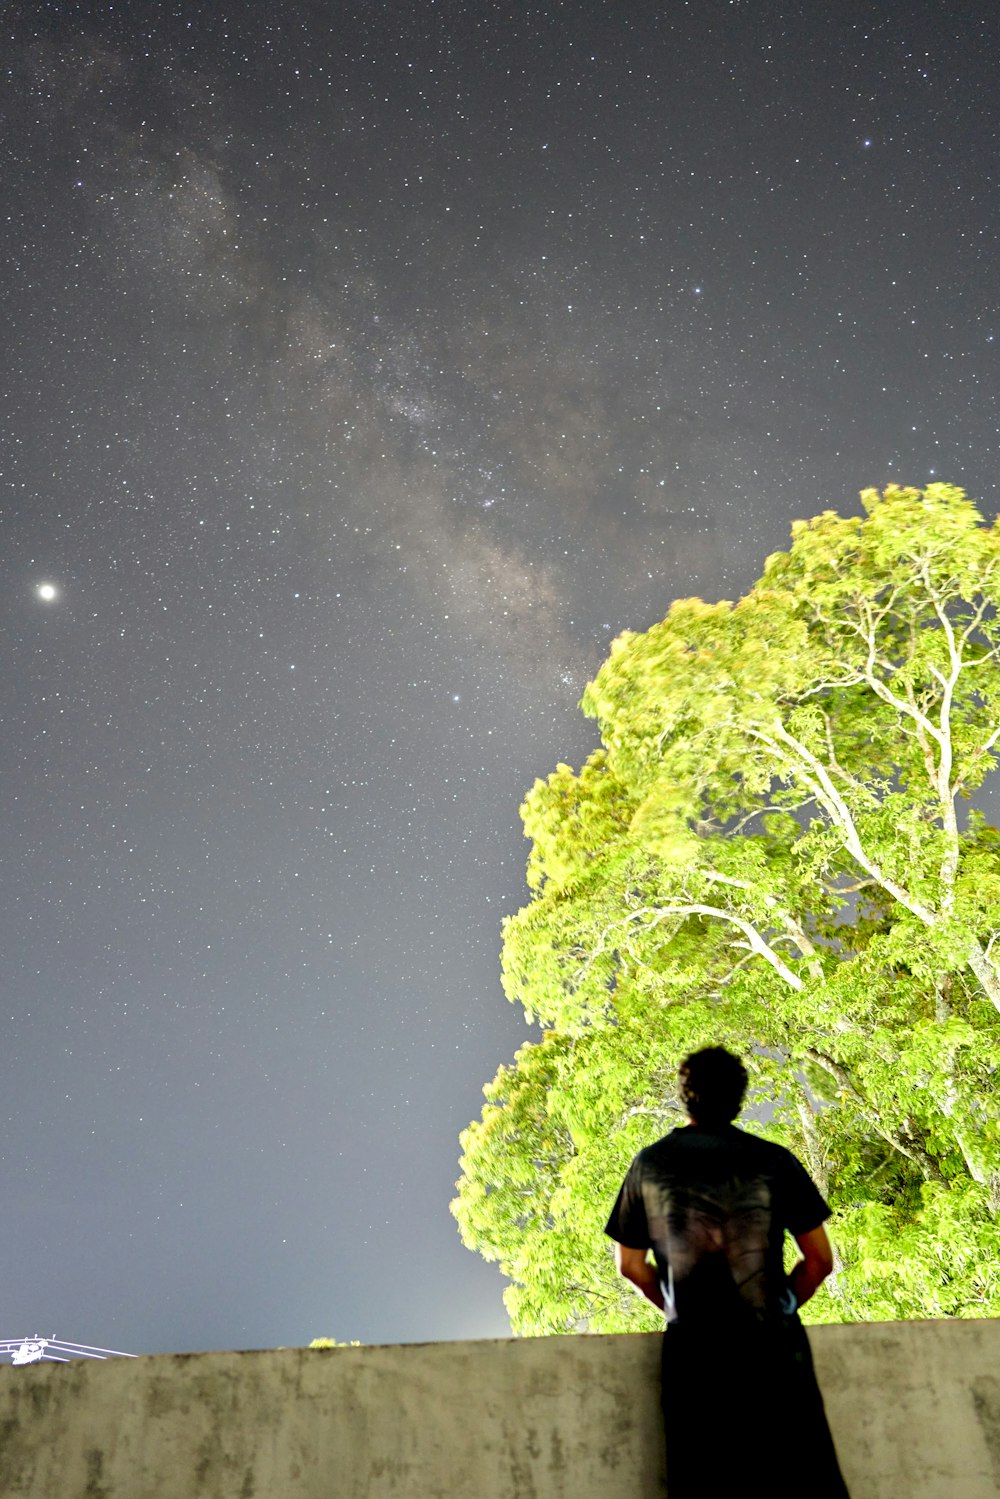 별이 빛나는 밤 아래 녹색 나무 근처에 서 있는 검은 재킷을 입은 남자